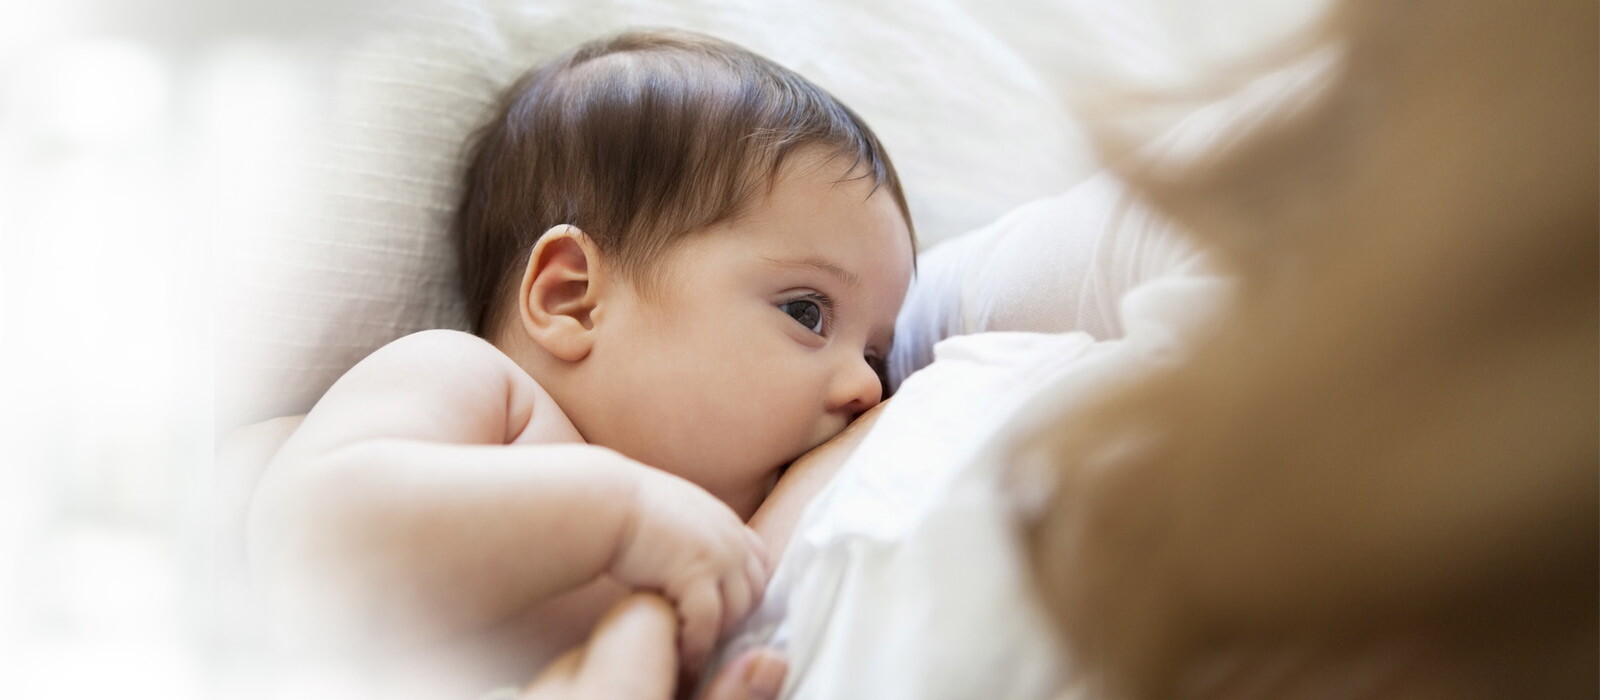 母乳是寶寶最好的營養來源，不論是照顧足月兒或早產兒時，醫師都會建議全母乳哺育，已提供寶寶完整營養